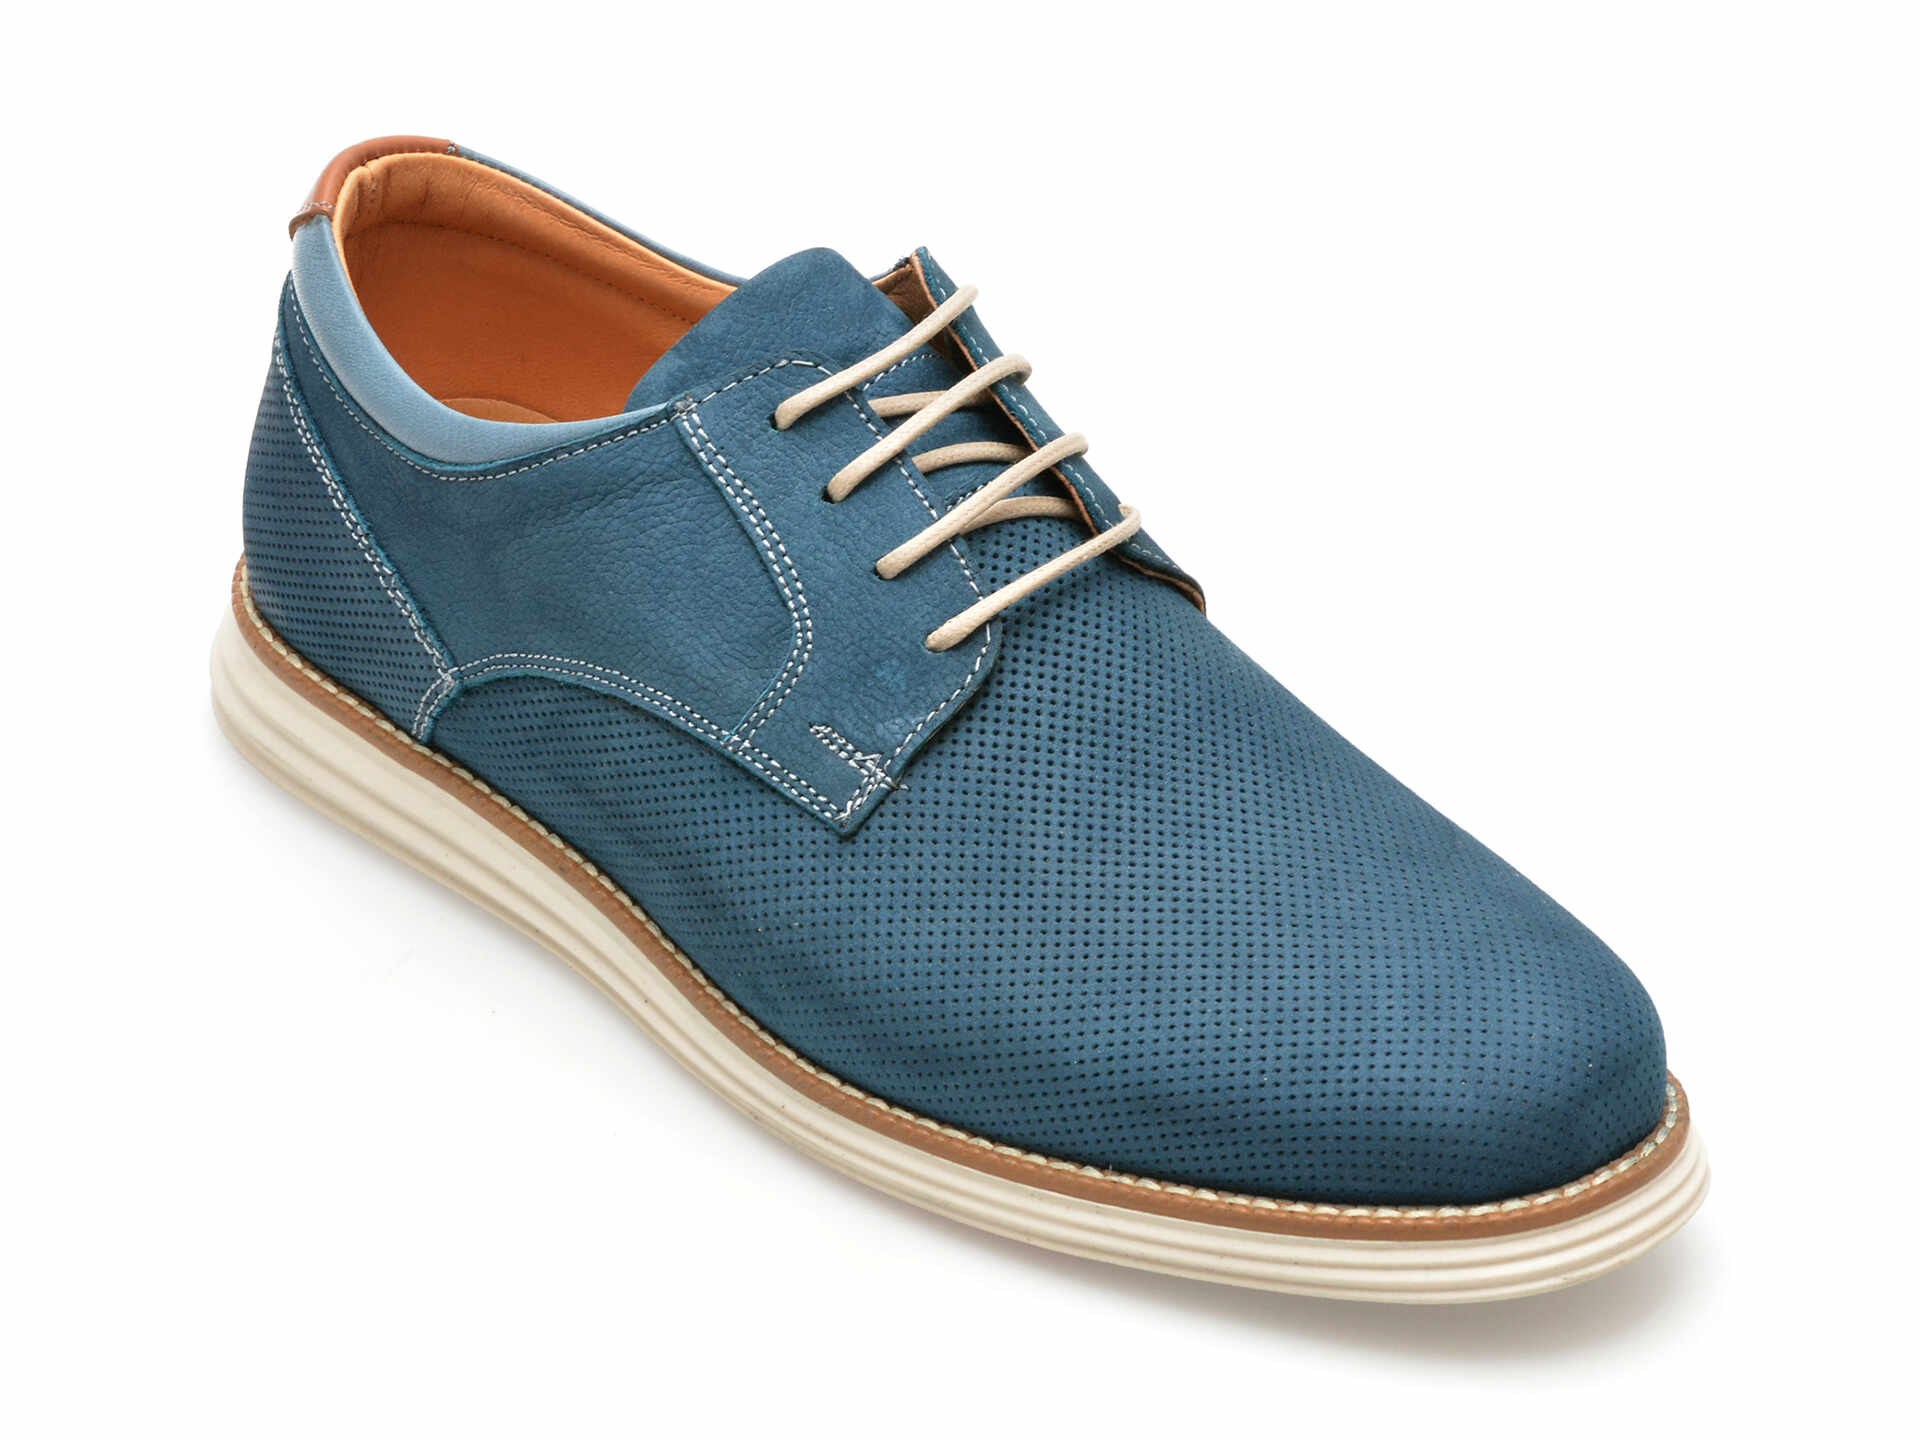 Pantofi OTTER albastri, A36, din nabuc